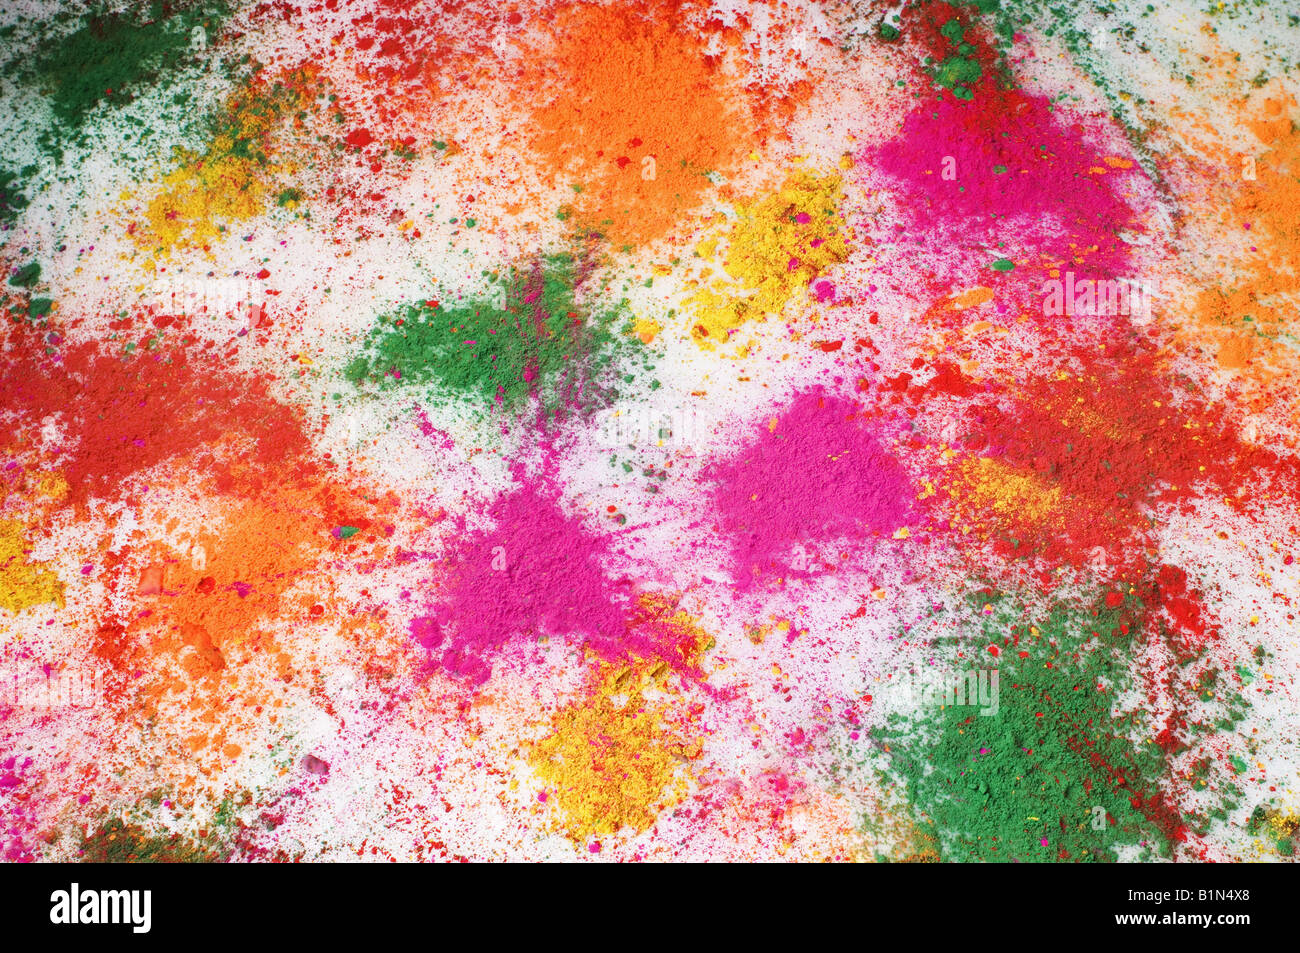 Elevato angolo di visualizzazione multi-colore di vernice in polvere sparsa sul pavimento Foto Stock